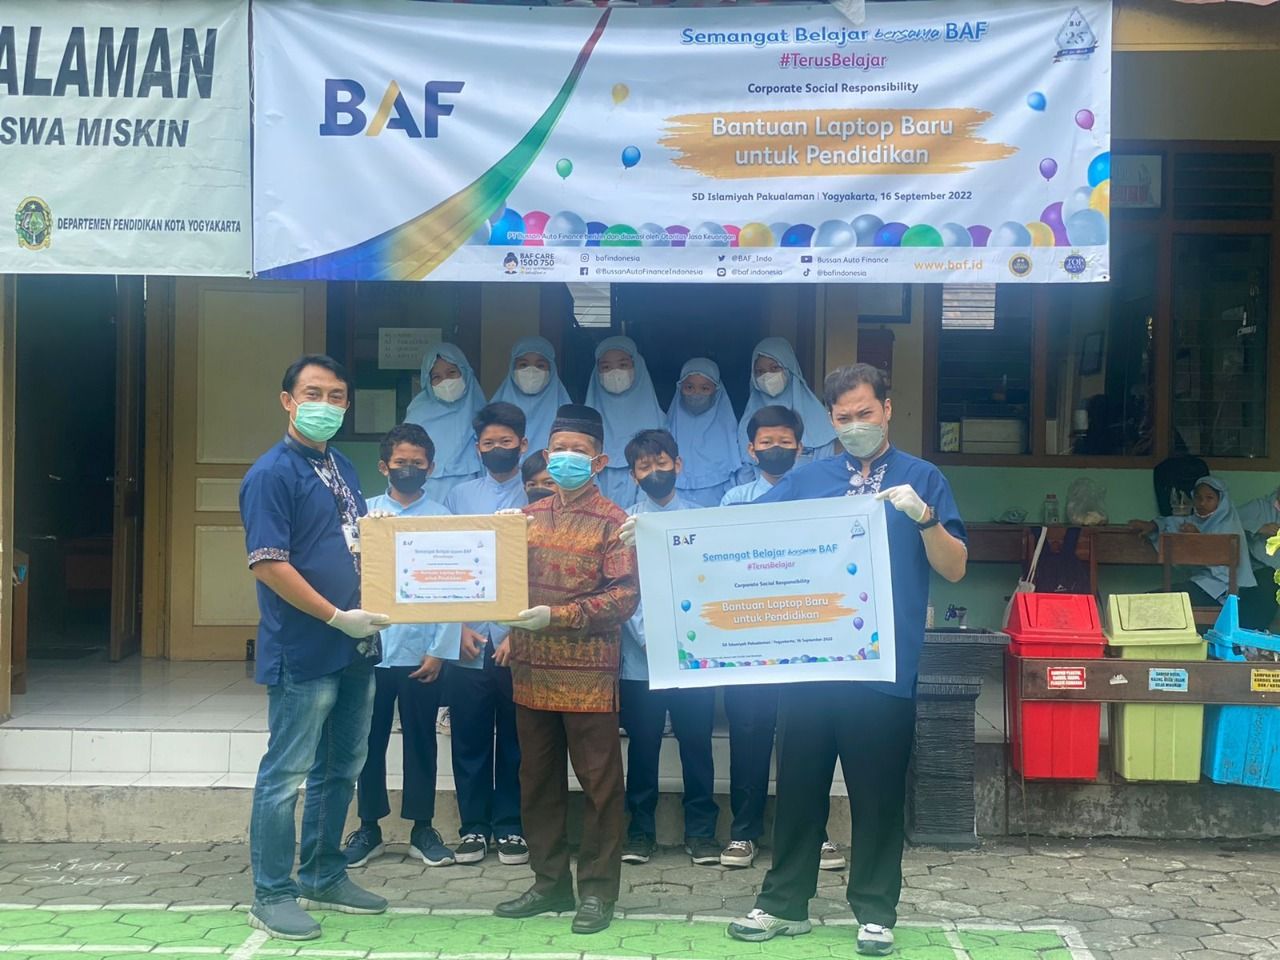 Sekretaris Yayasan Islamiyah Yogyakarta Muhammad Djati Hudaya (tengah) menerima bantuan Program BAF Caring for Children dari BRH BAF Yogyakarta, Sutarto.